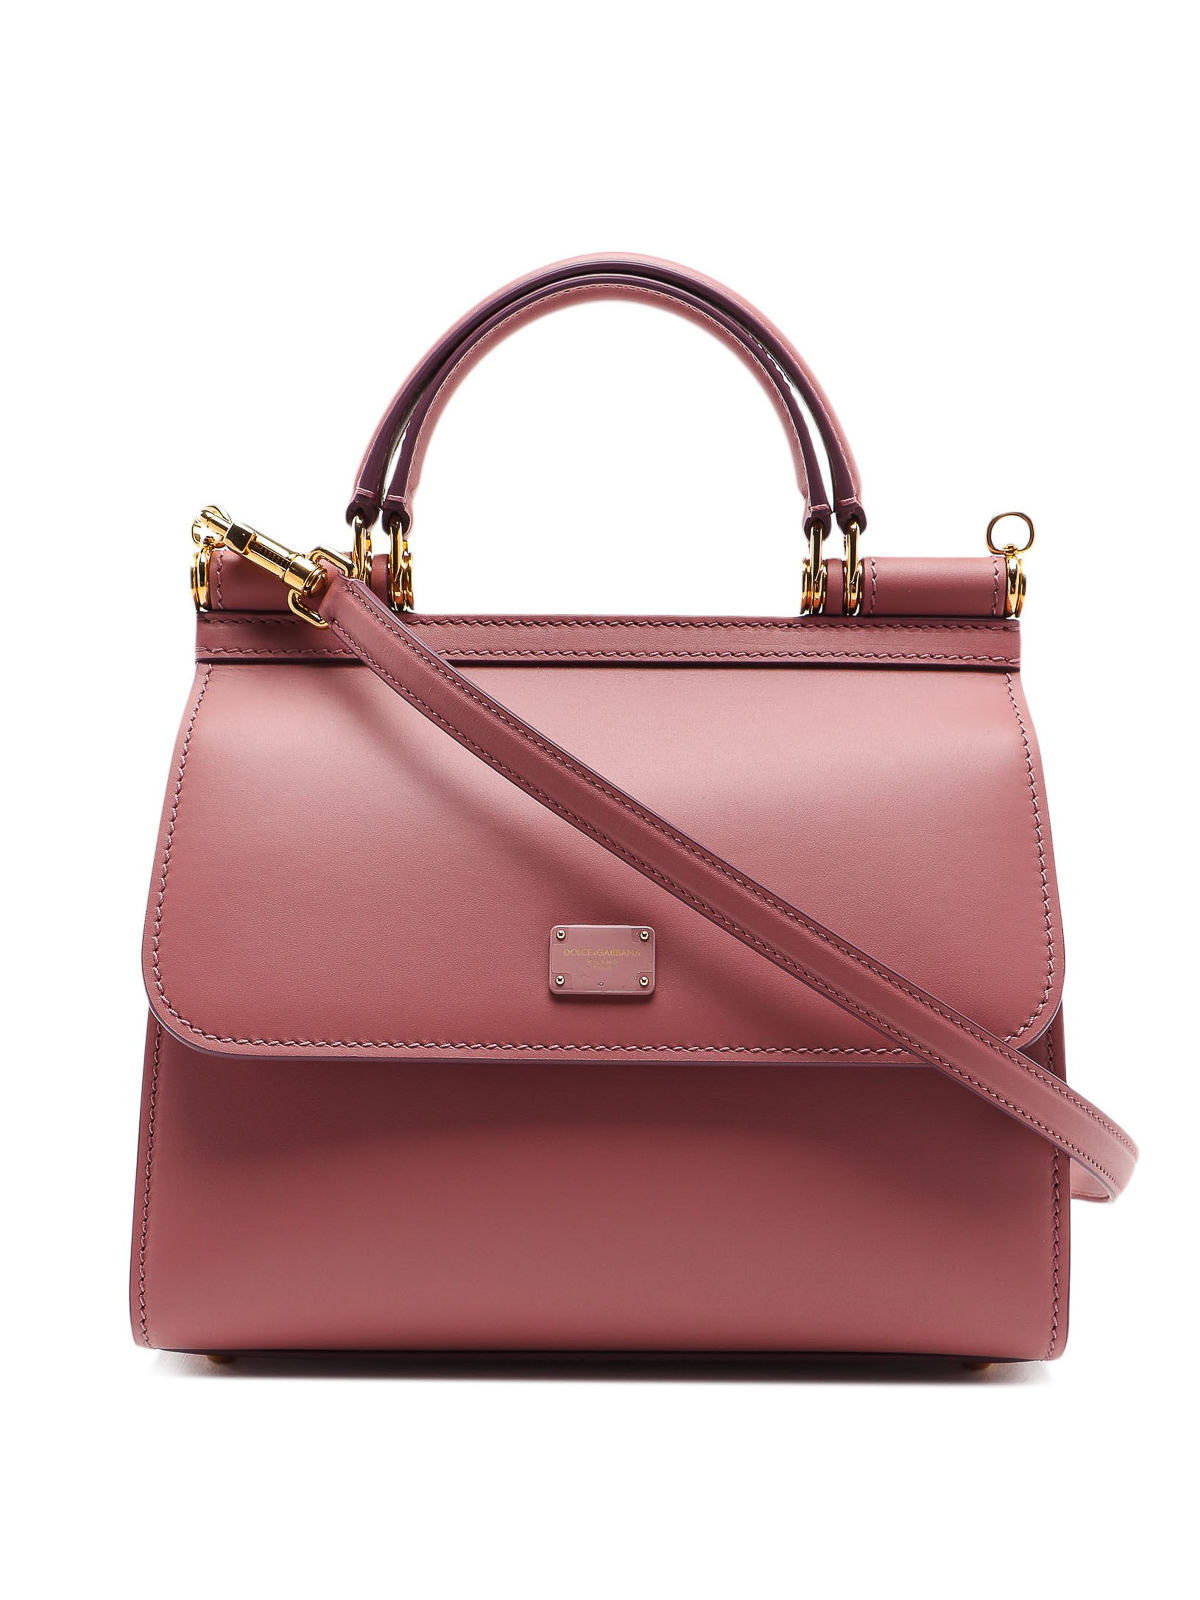 Dolce & Gabbana Sicily Small Leather Shoulder Bag - Pink